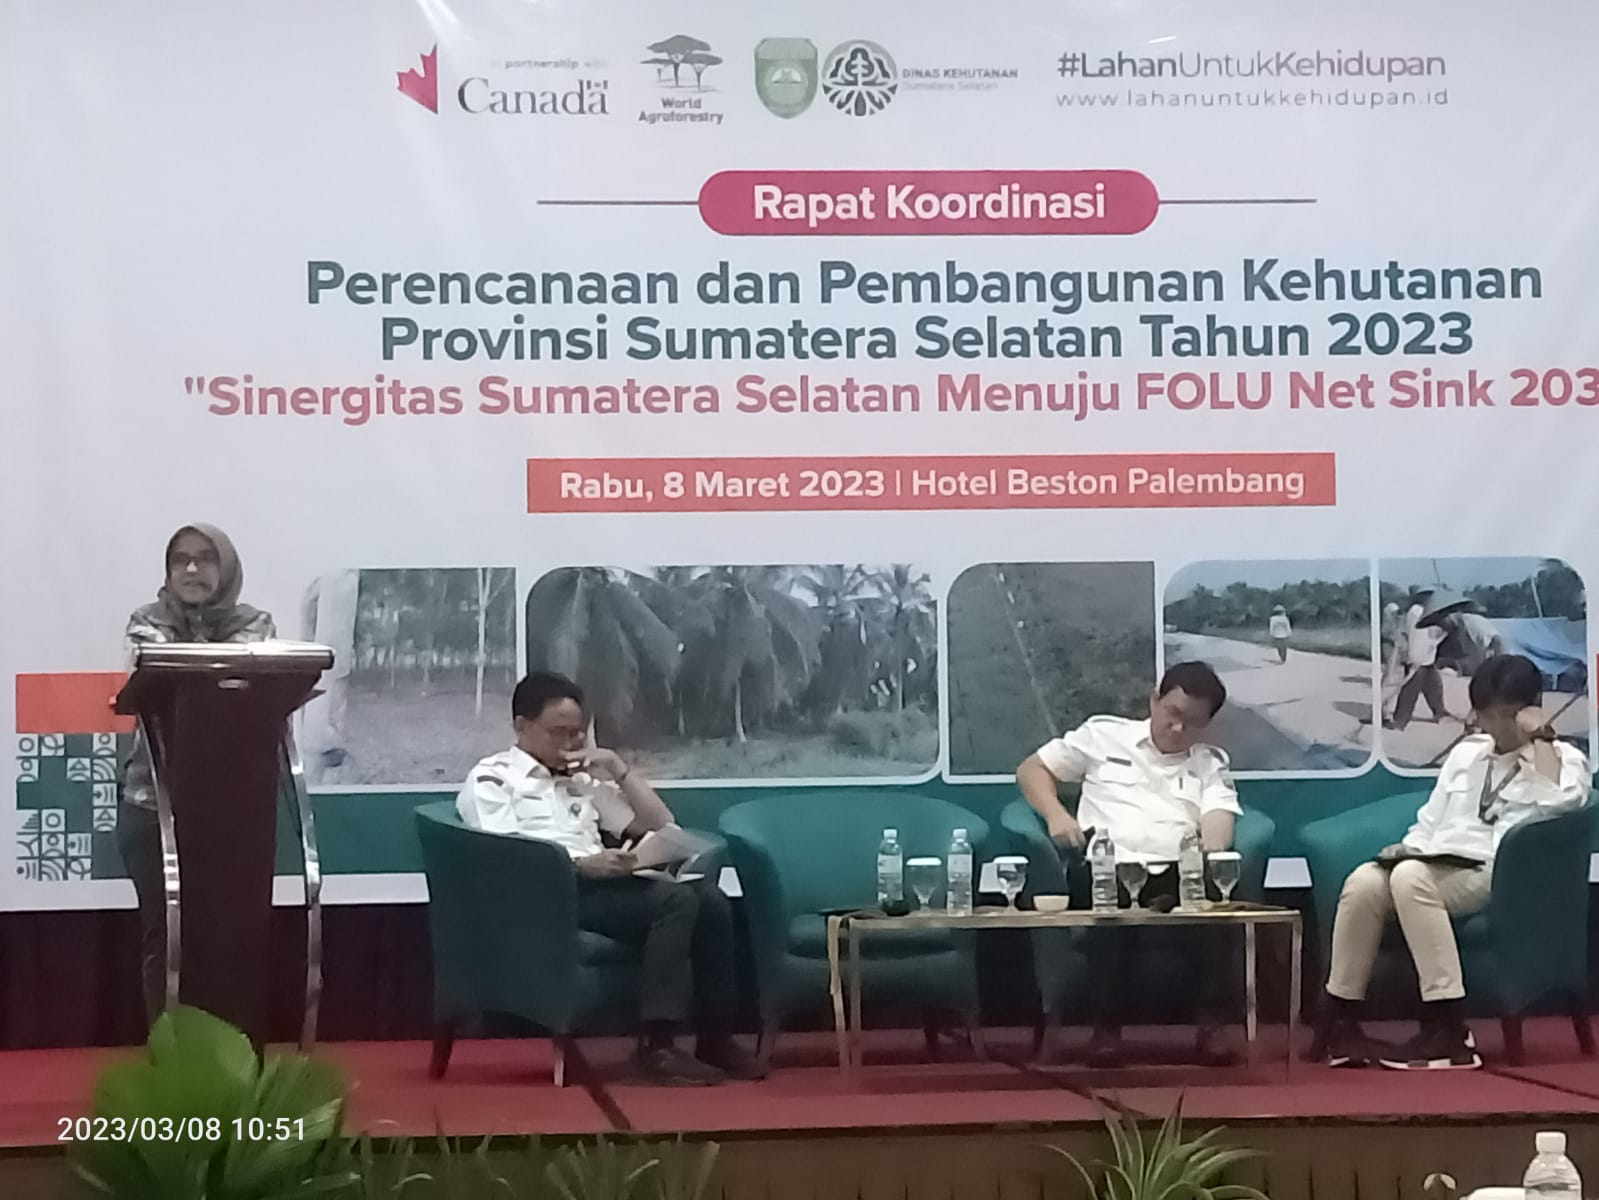 Sinergitas Sumatera Selatan menuju Indonesia’s Folu Net Sink 2030